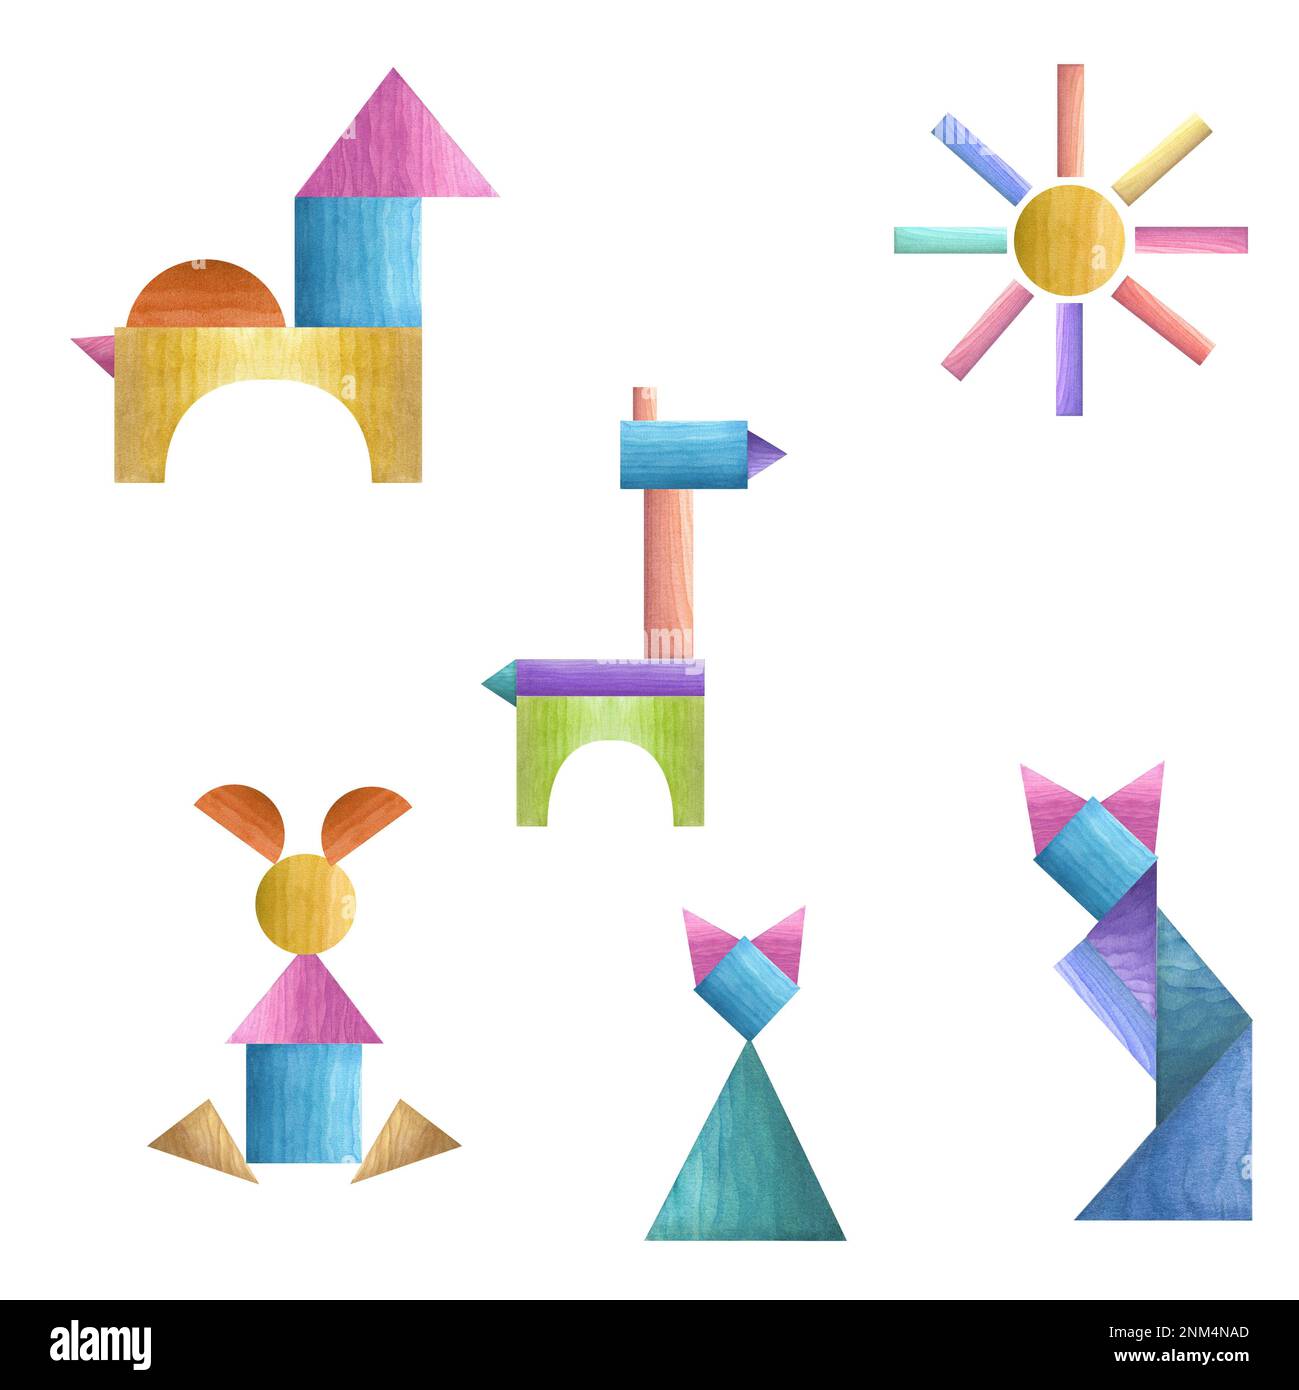 Ensemble de puzzles géométriques de tangogramme d'aquarelle isolés sur fond blanc. Matériaux écologiques jouets pour bébés. Imprimé, affiche, décor, papier peint, emballage Banque D'Images